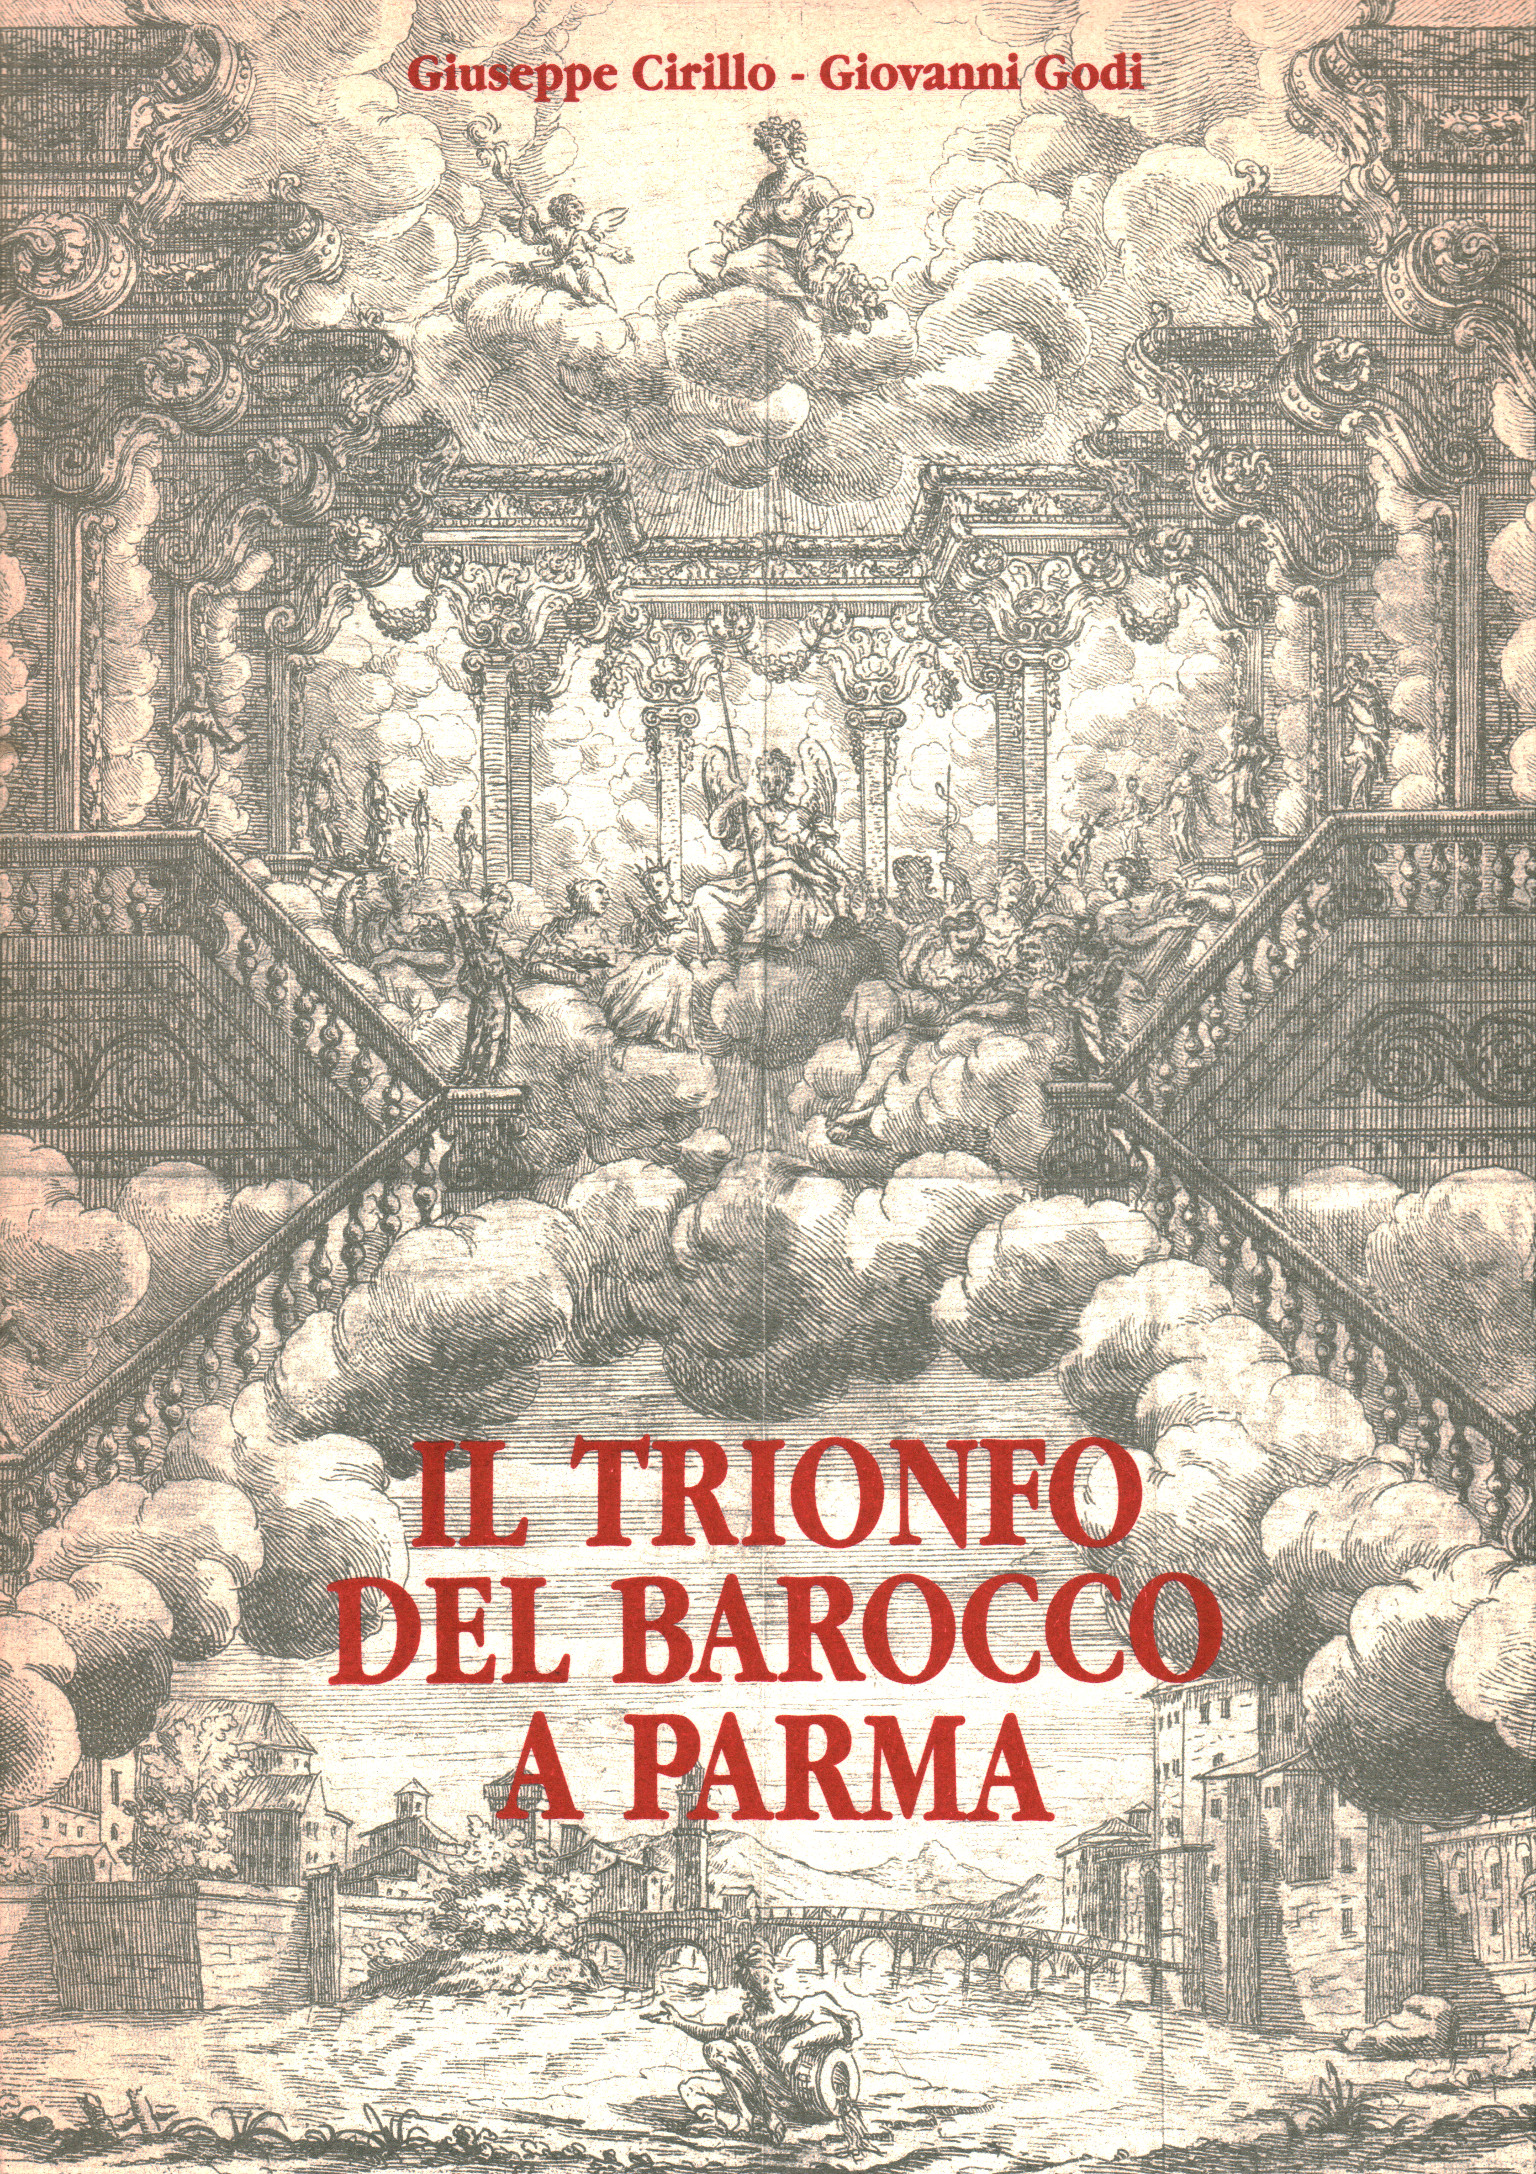 El triunfo del barroco en Parma